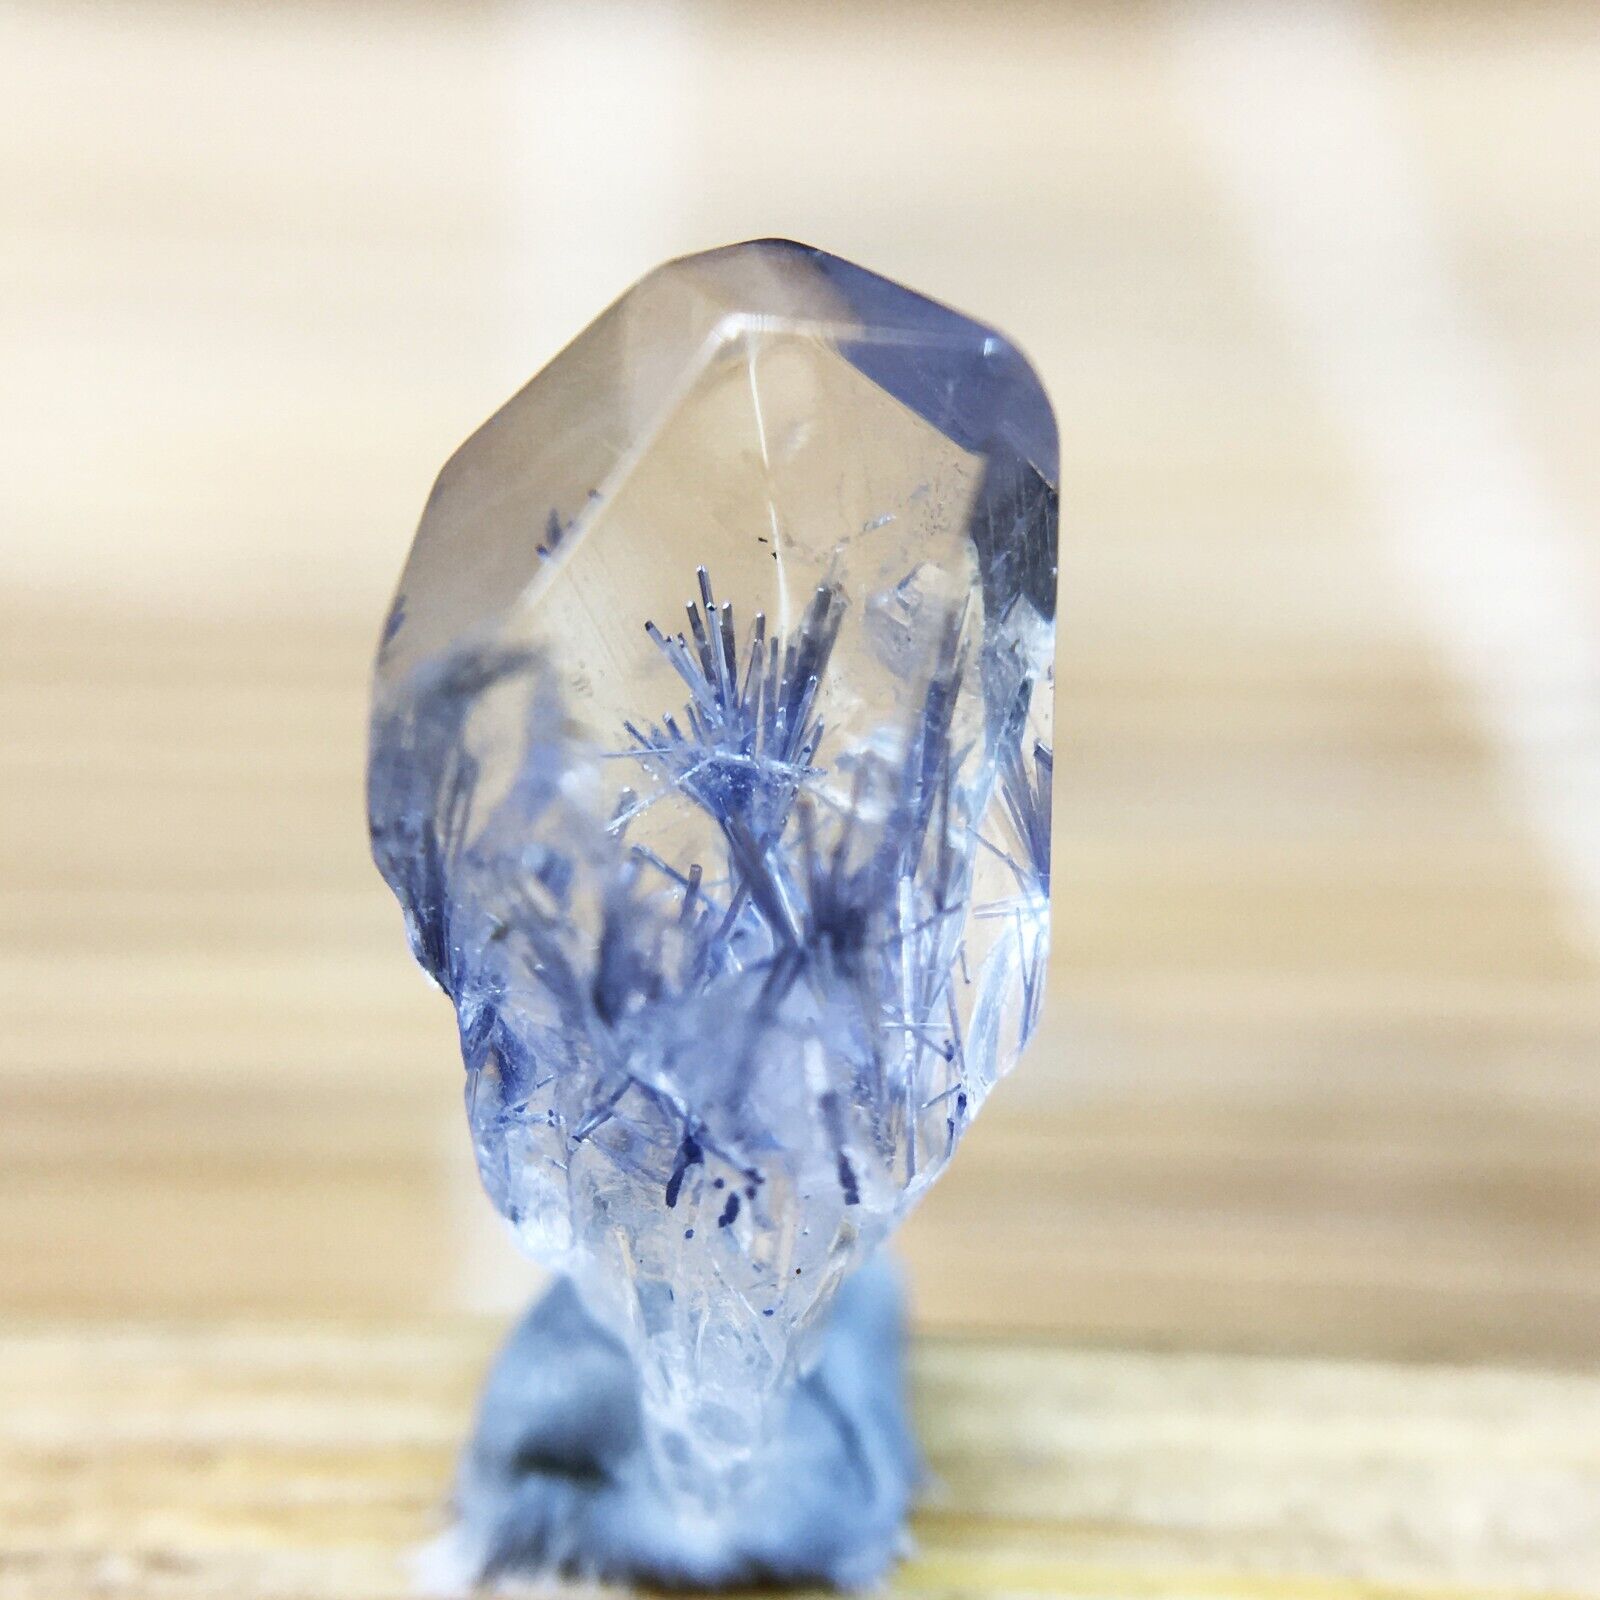 1.8Ct Very Rare NATURAL Beautiful Blue Dumortierite Quartz Crystal Specimen